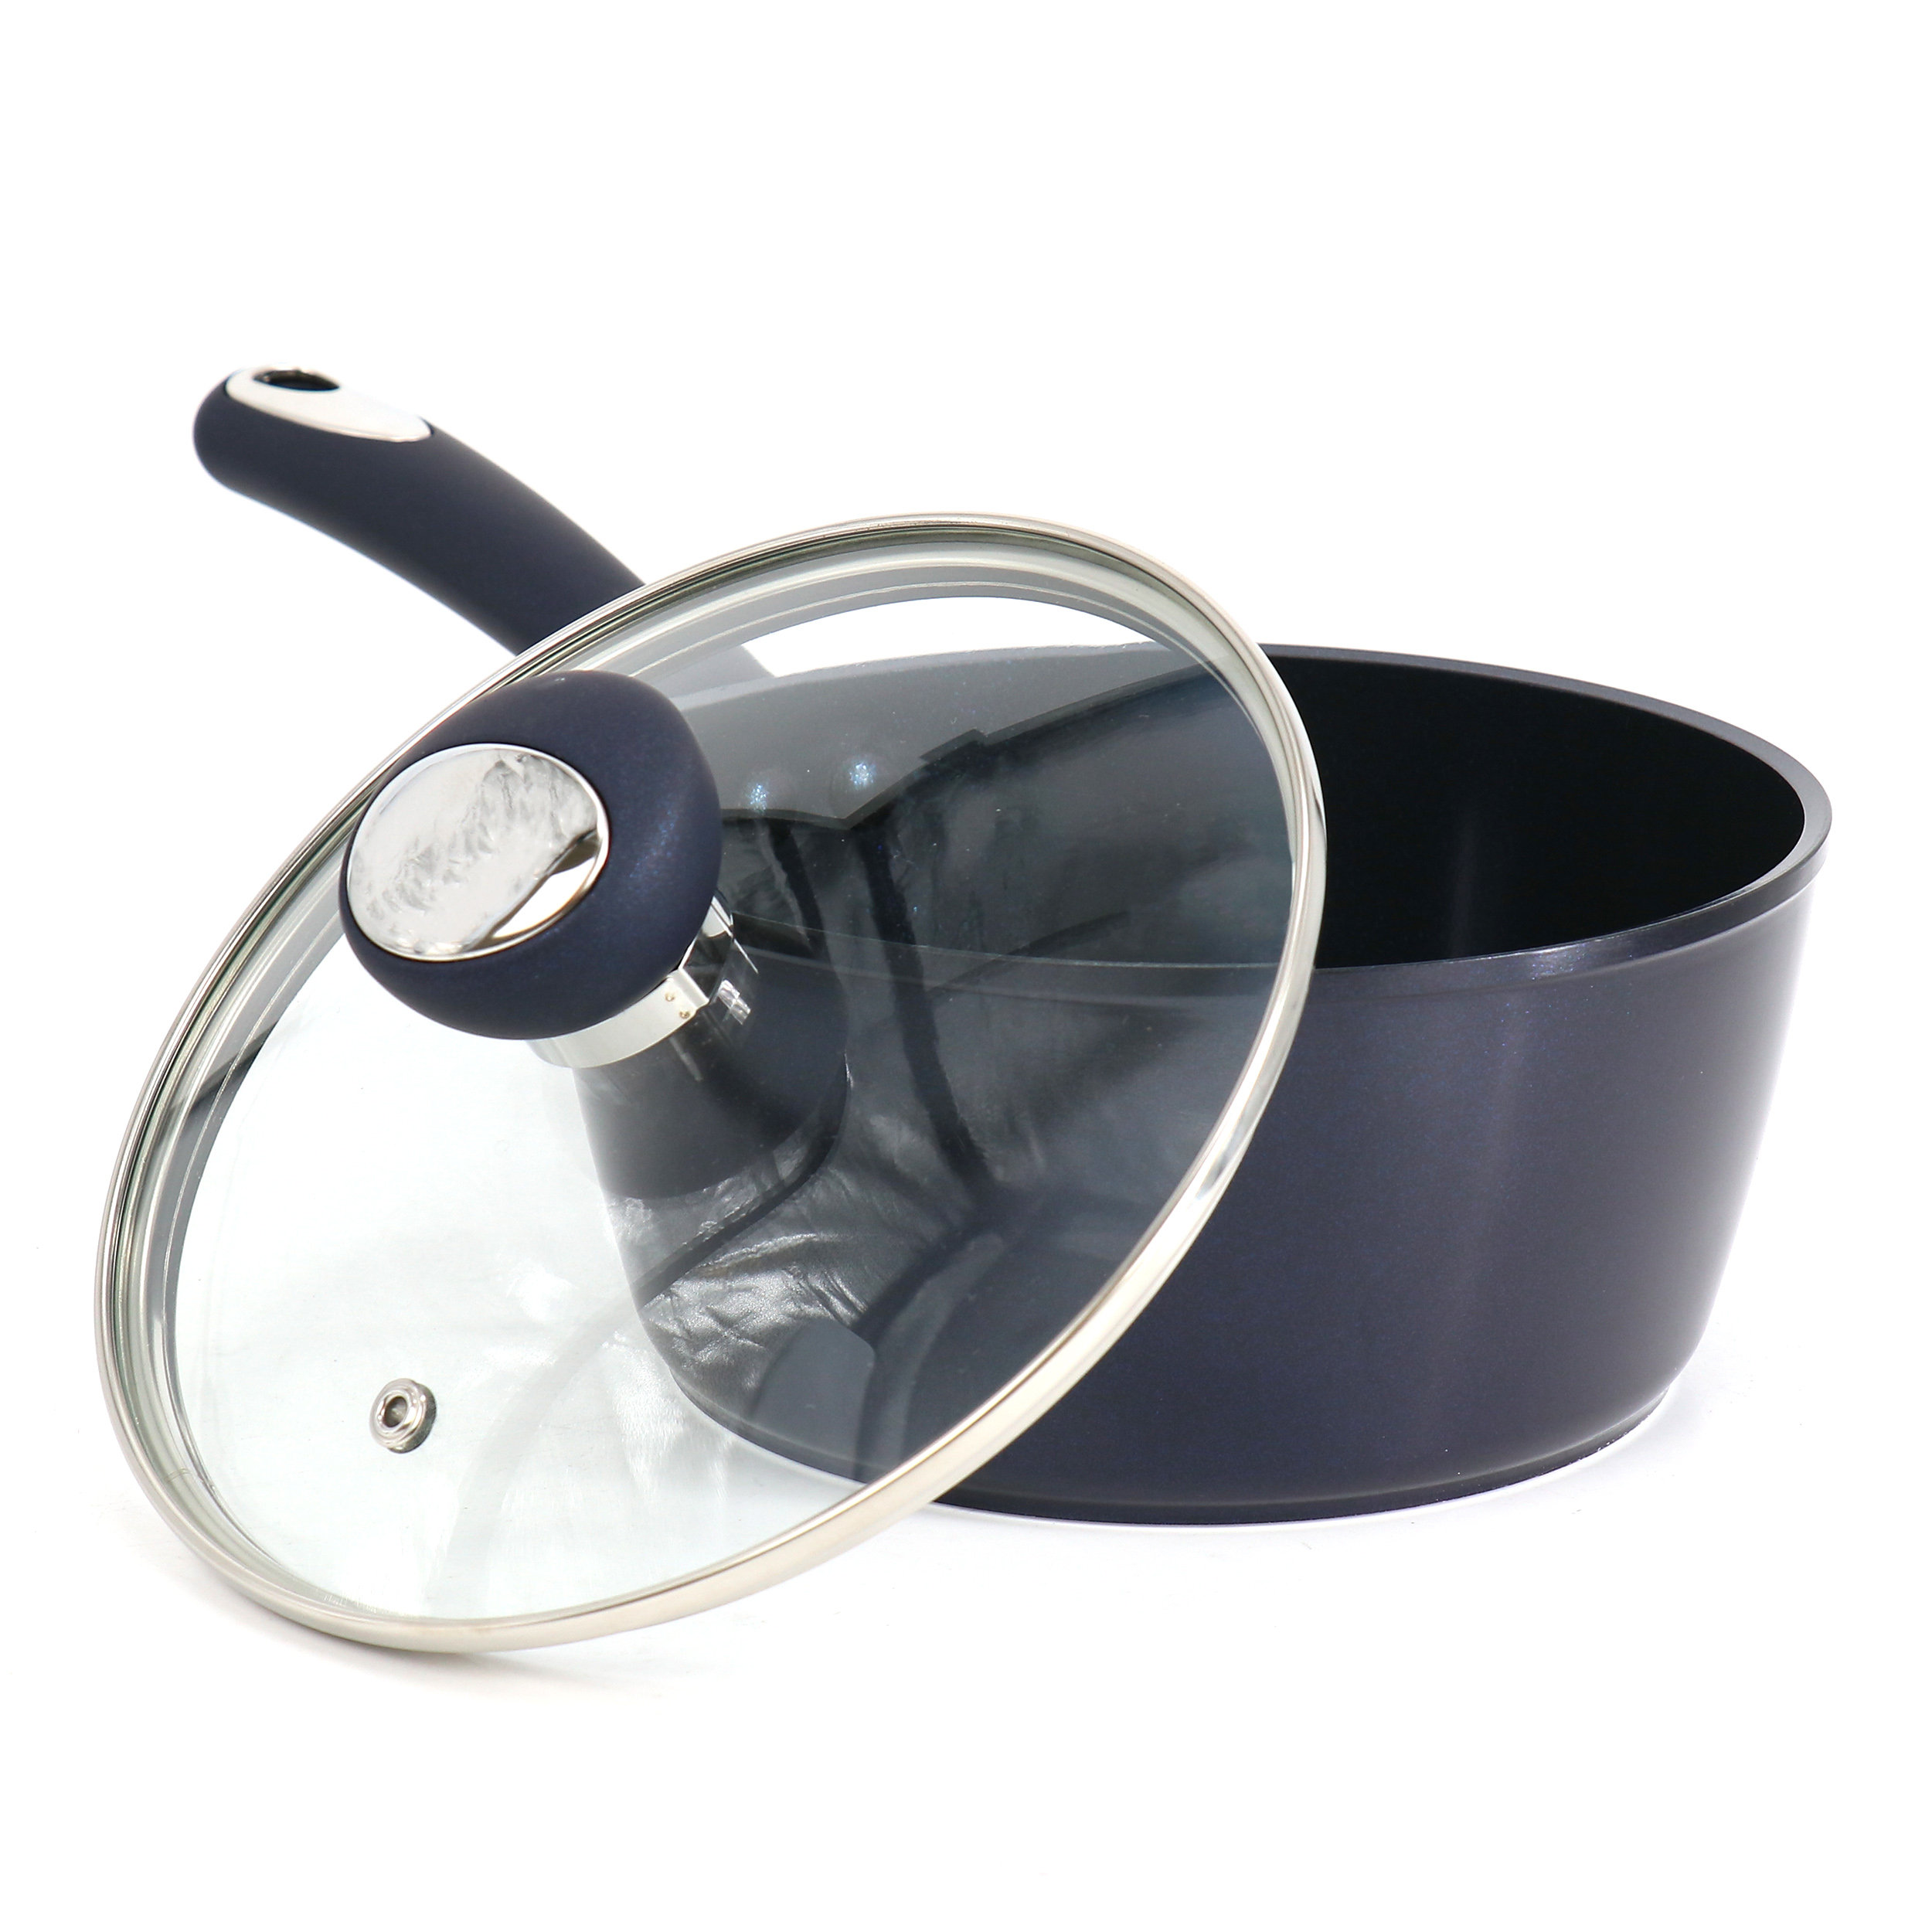 Oster Hawke 3.9 Quart Ceramic Nonstick Aluminum Saute Pan With Lid